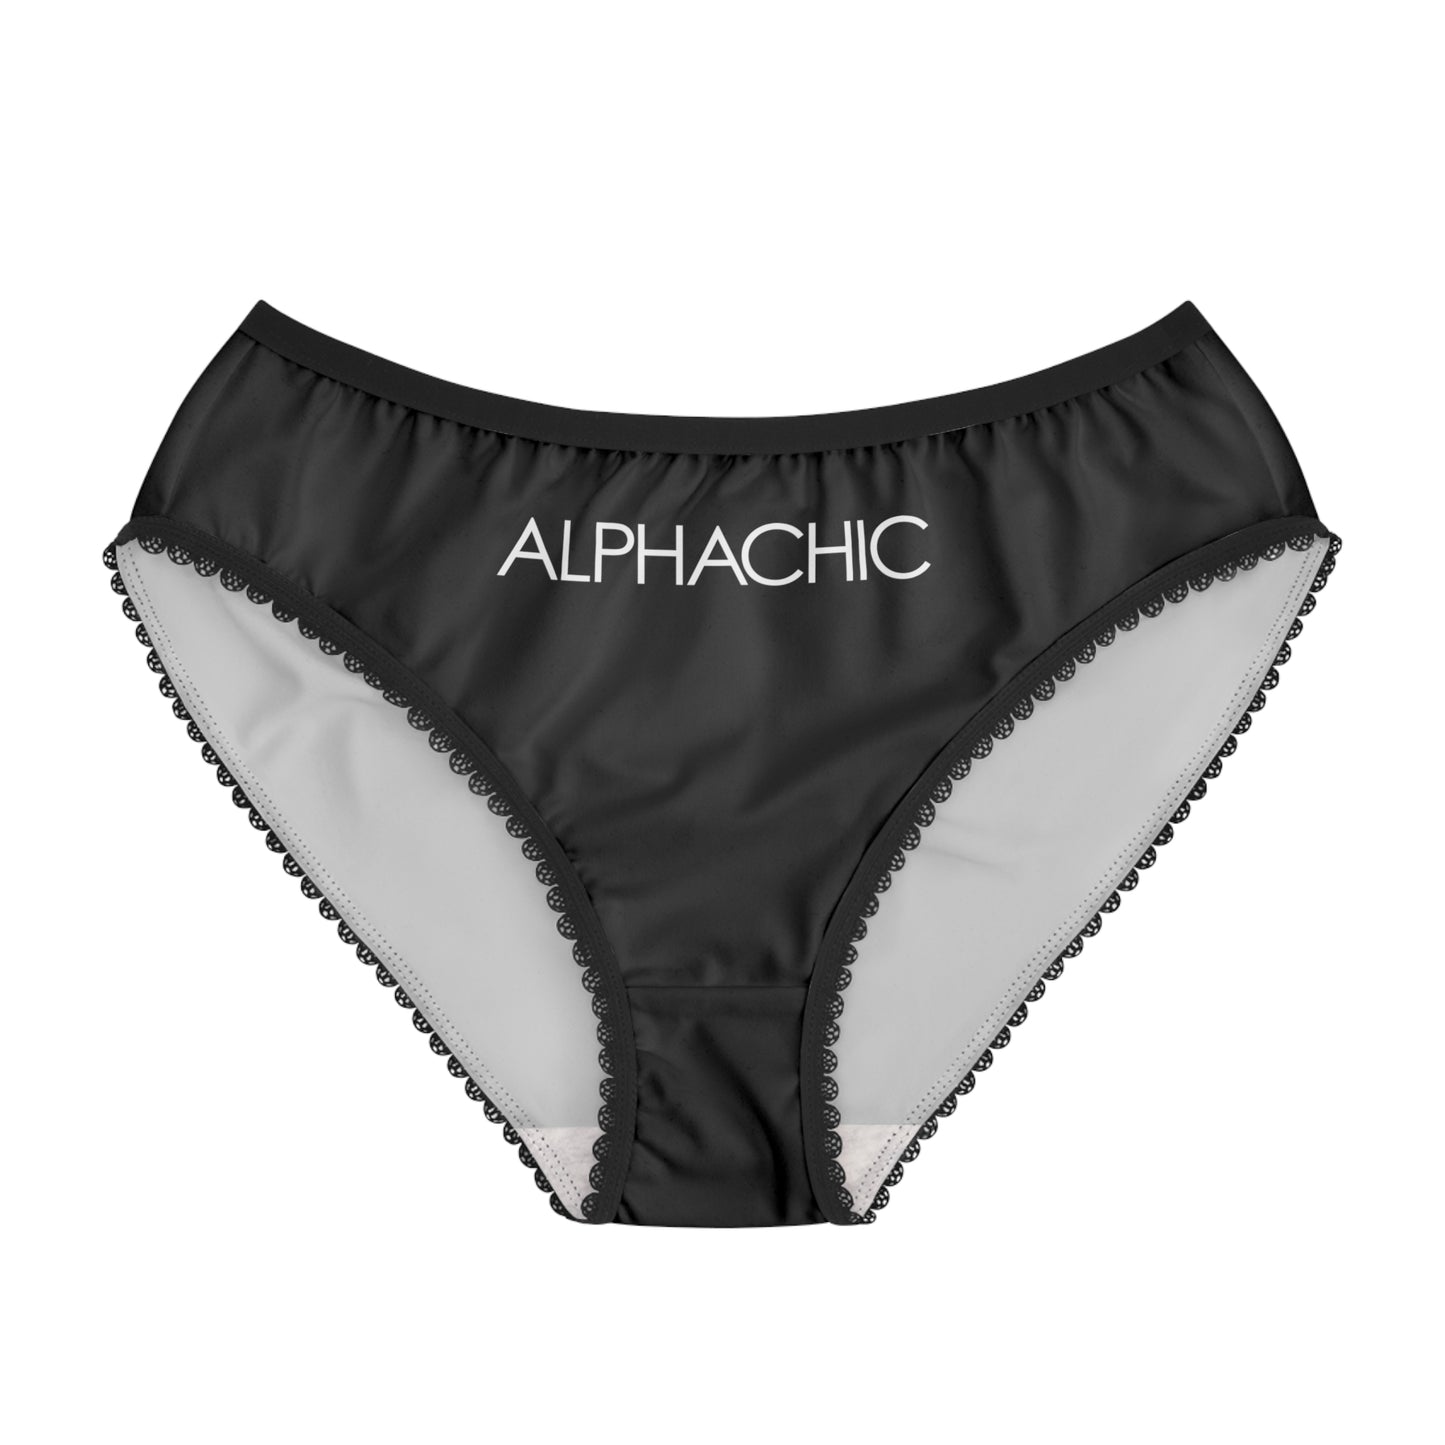 AlphaChic Briefs - Black